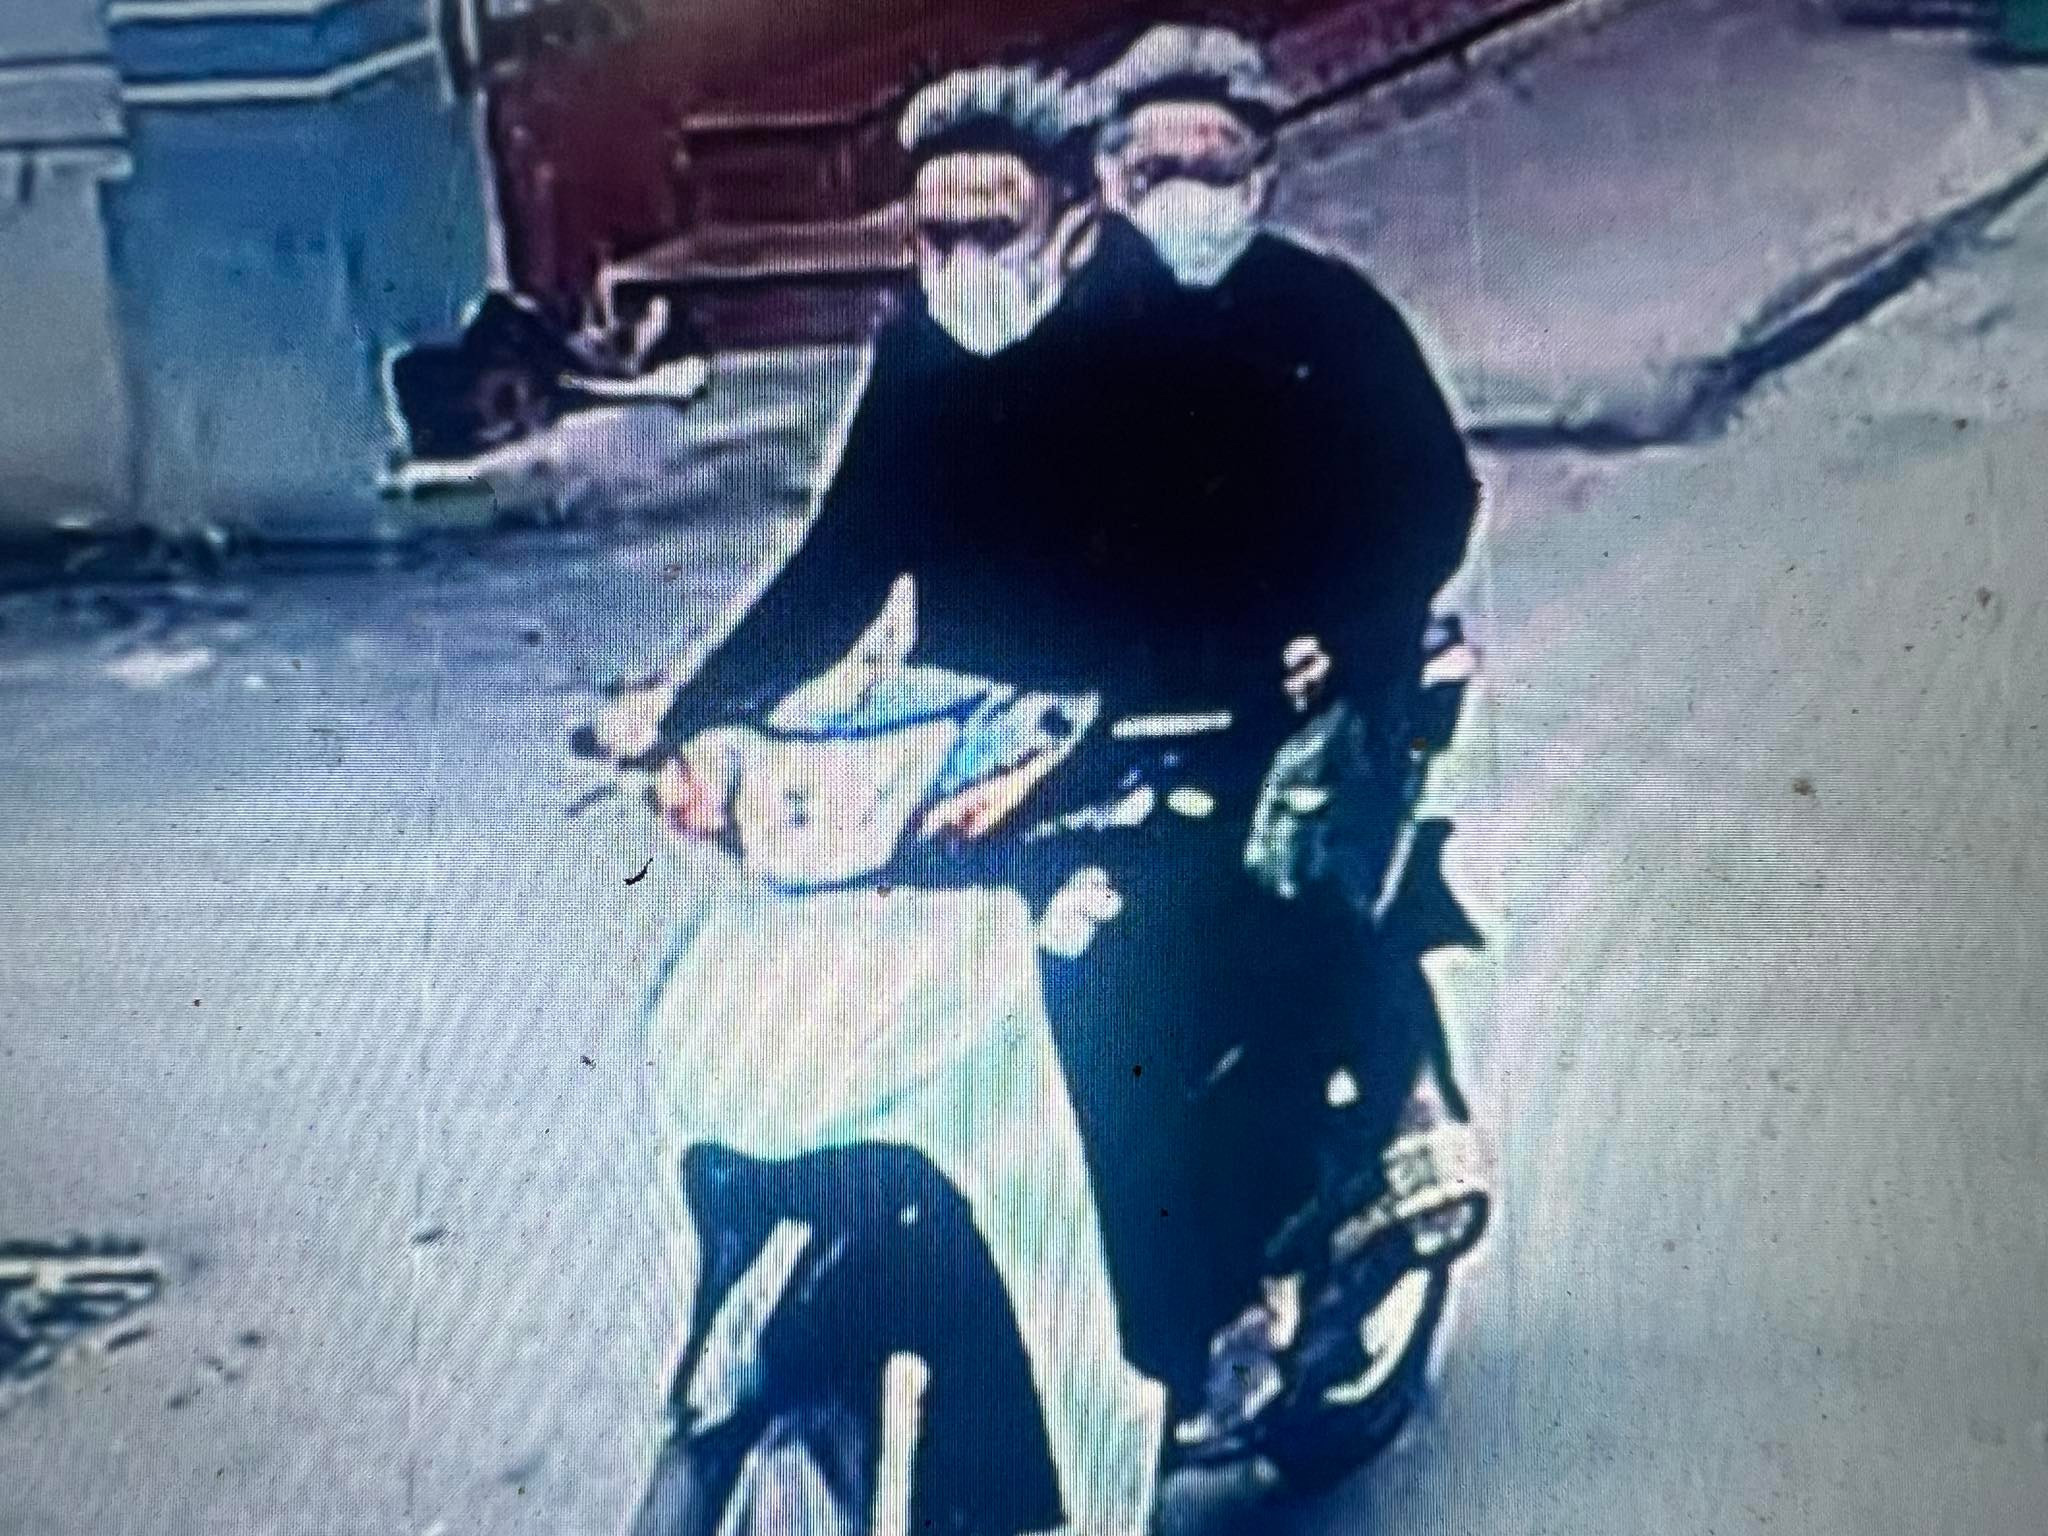 Công bố hình ảnh, truy tìm 2 thanh niên dí dao cướp tài sản ở Hà Nội-1